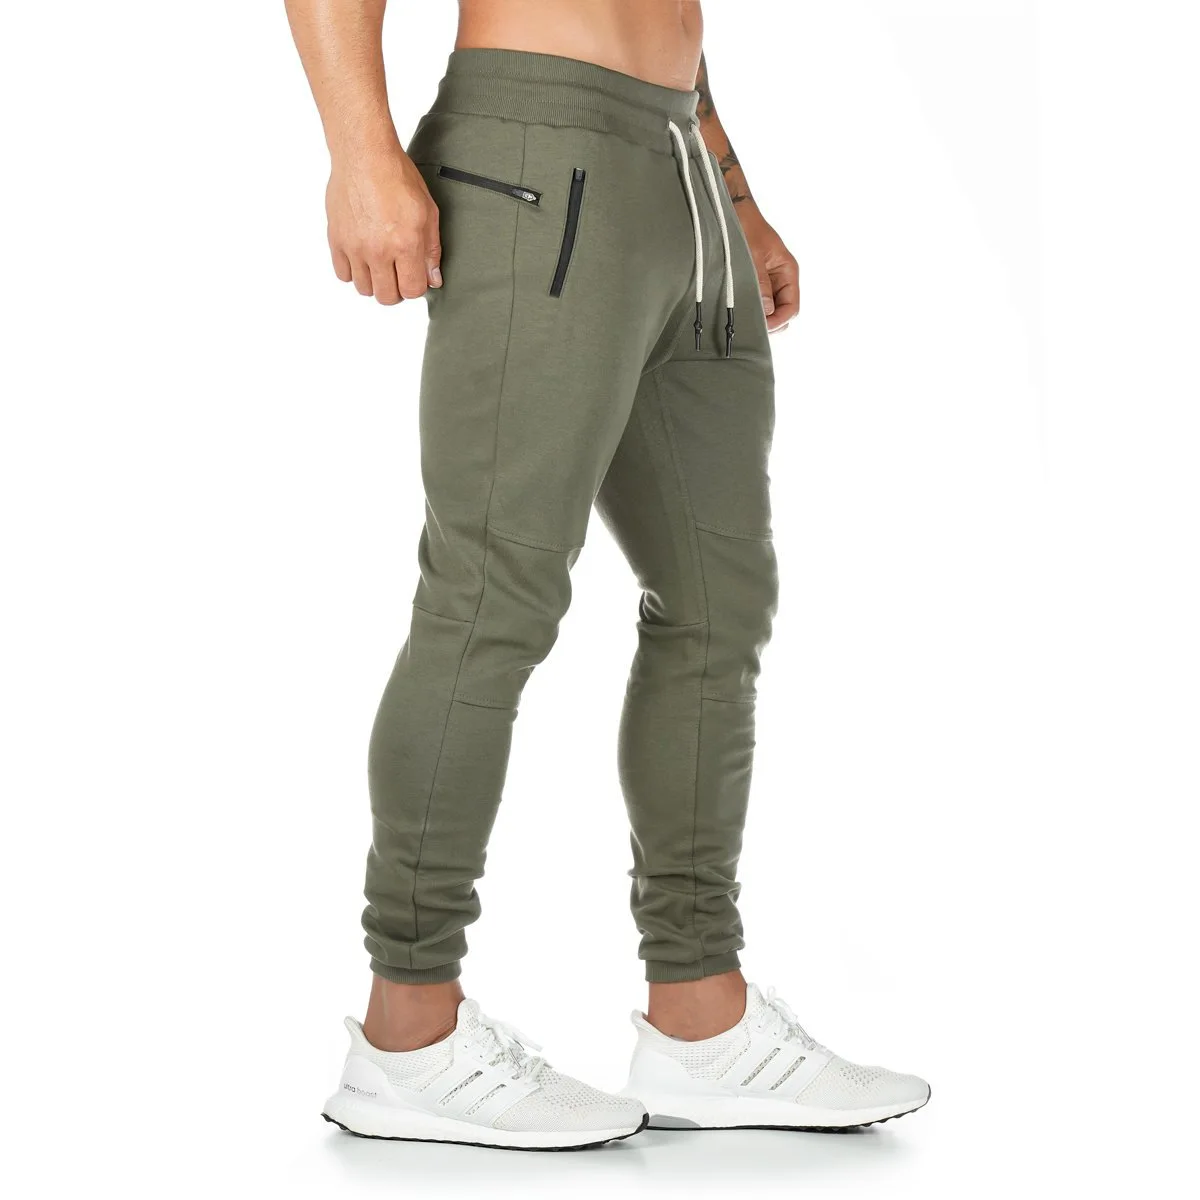 Новые хлопковые мужские спортивные штаны с полотенцем и карманом для сотового телефона, мужские спортивные леггинсы, тренировочные штаны